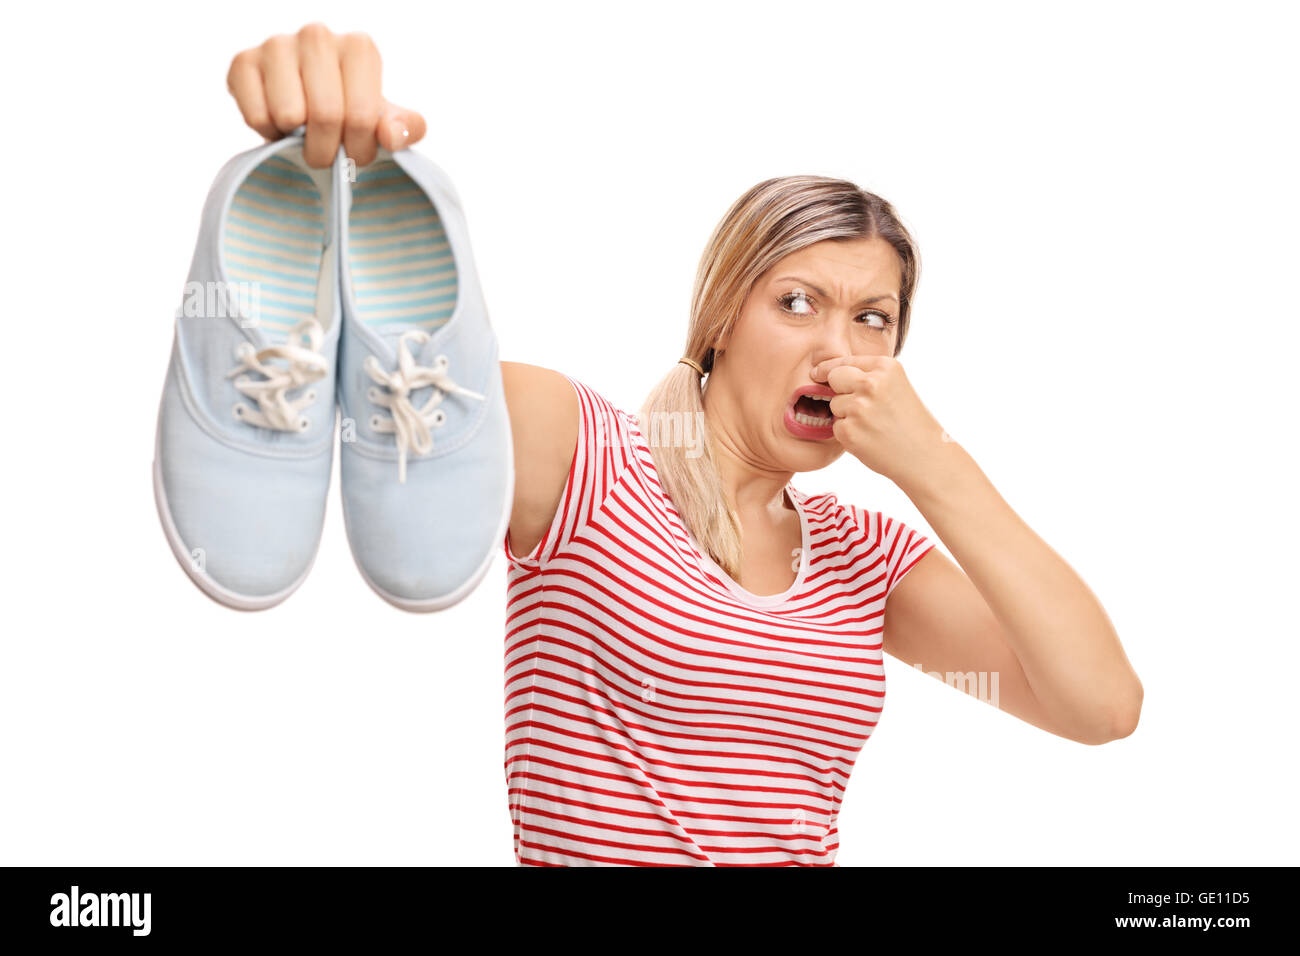 Disgustato donna tenendo un paio di scarpe stinky isolati su sfondo bianco Foto Stock